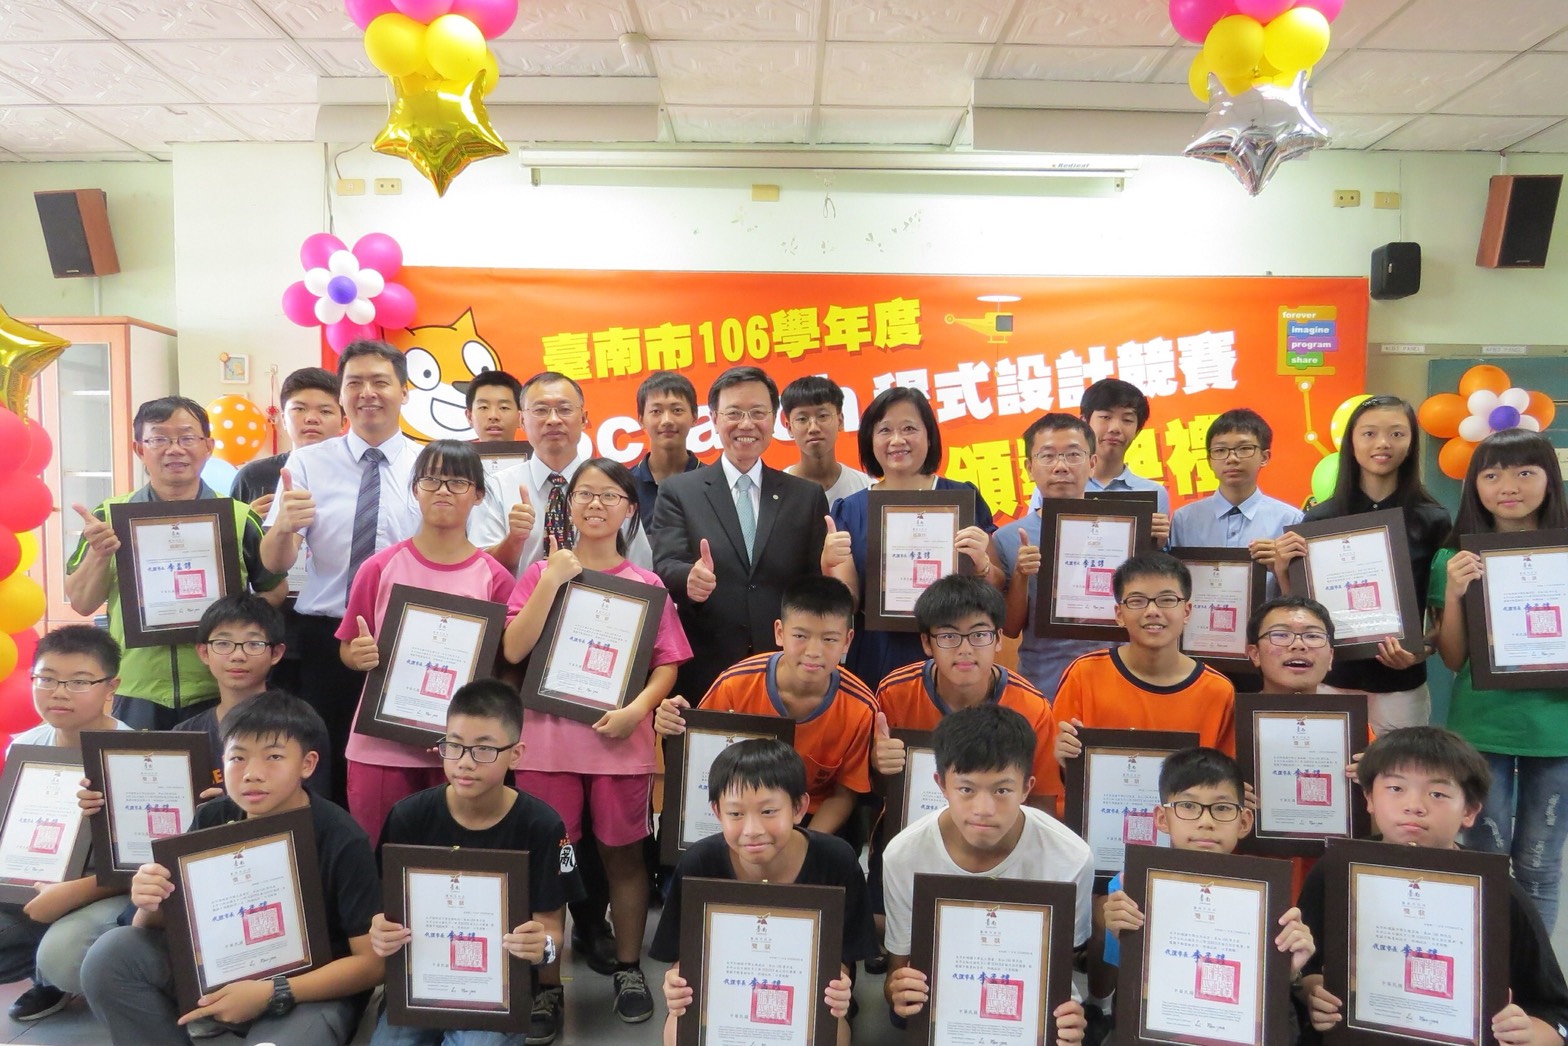 臺南市透過參與程式設計競賽，建立學生自信，張政源副市長（中著西裝者）大表讚揚。